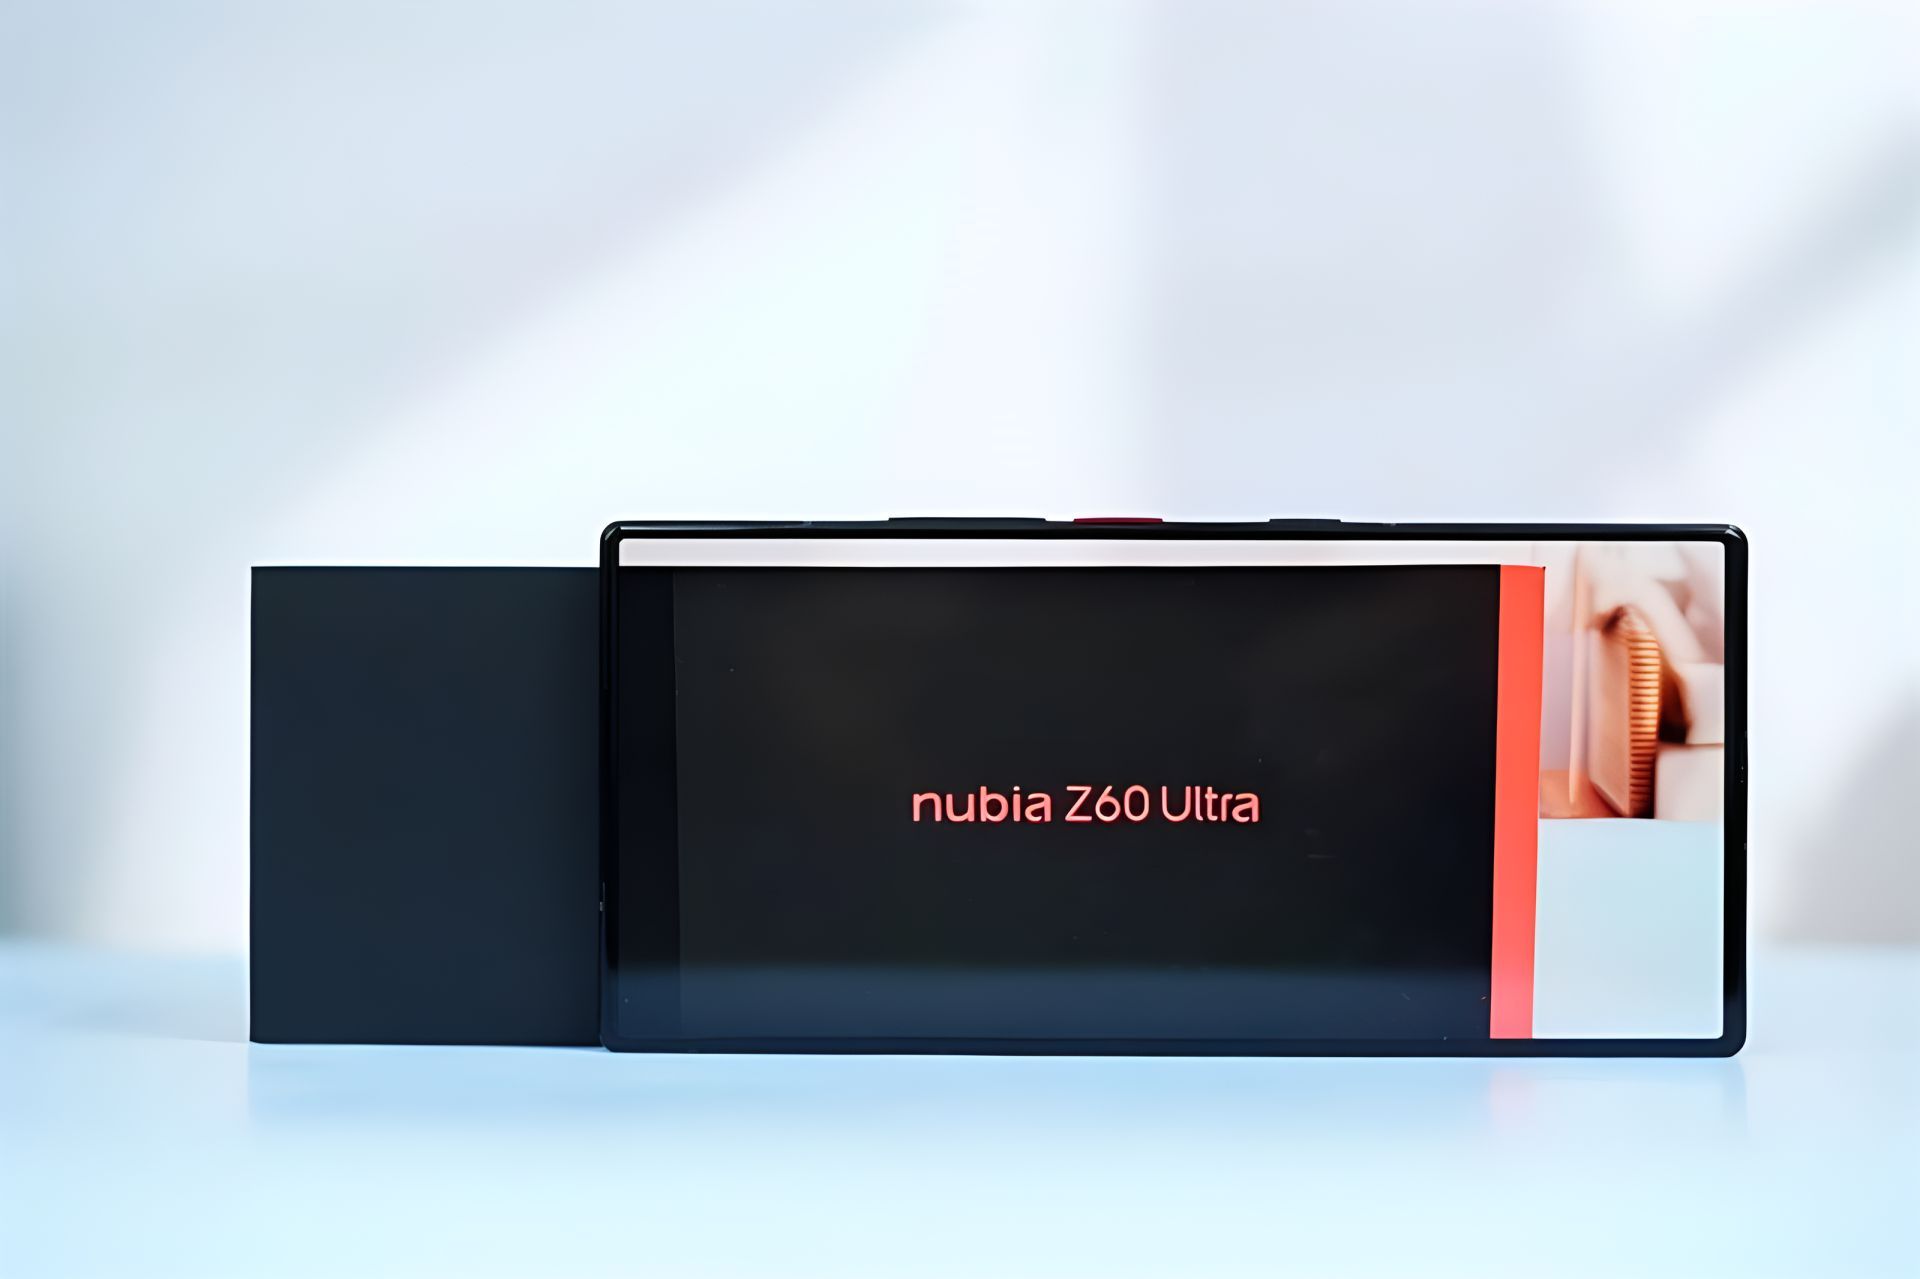 Nubia Z60 Ultra Review